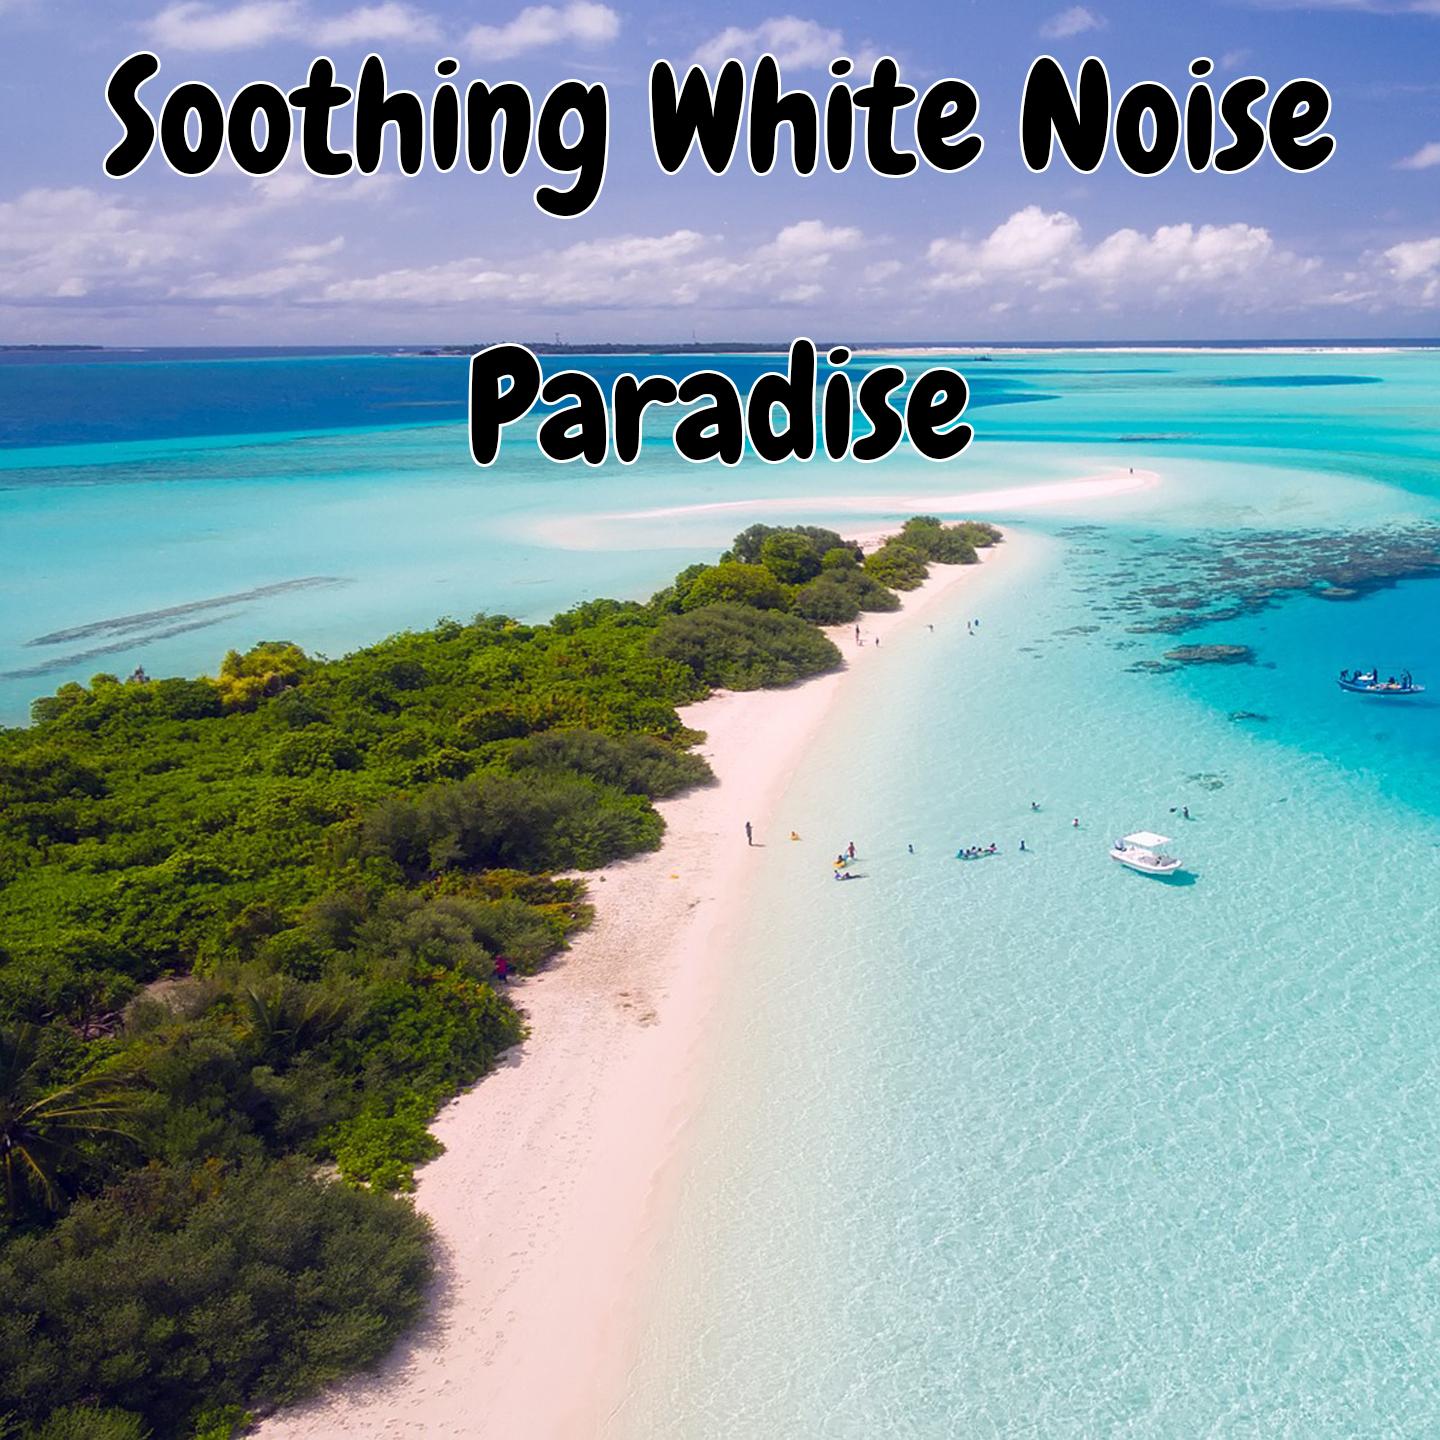 Soothing White Noise Paradise